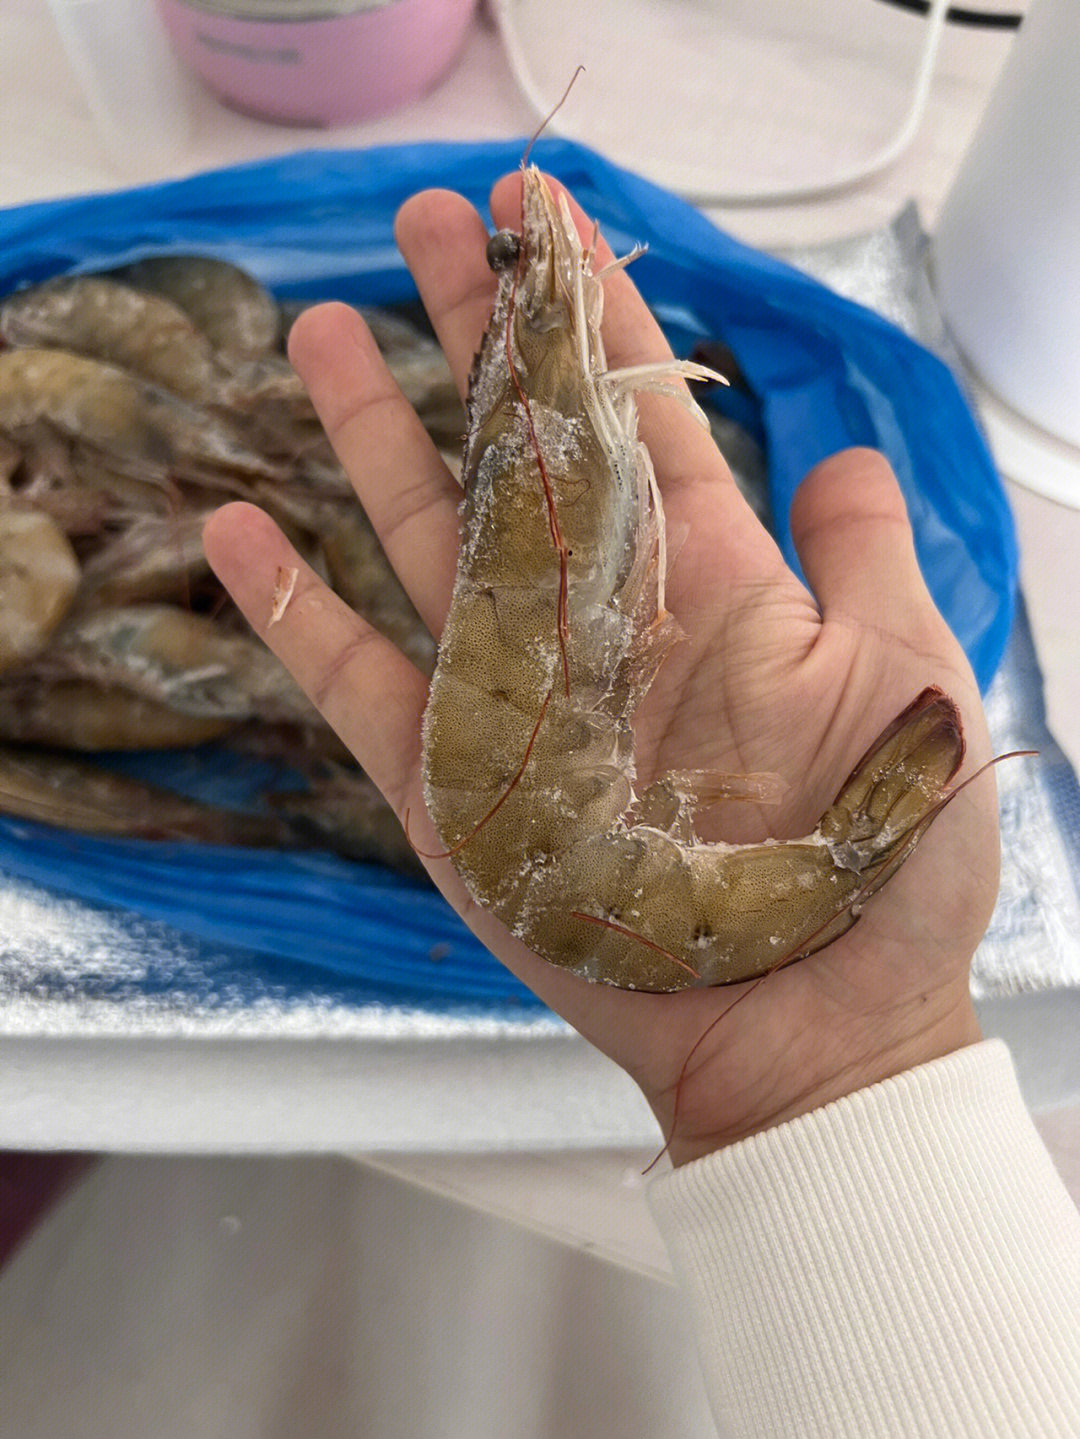 青岛海虾的种类图片